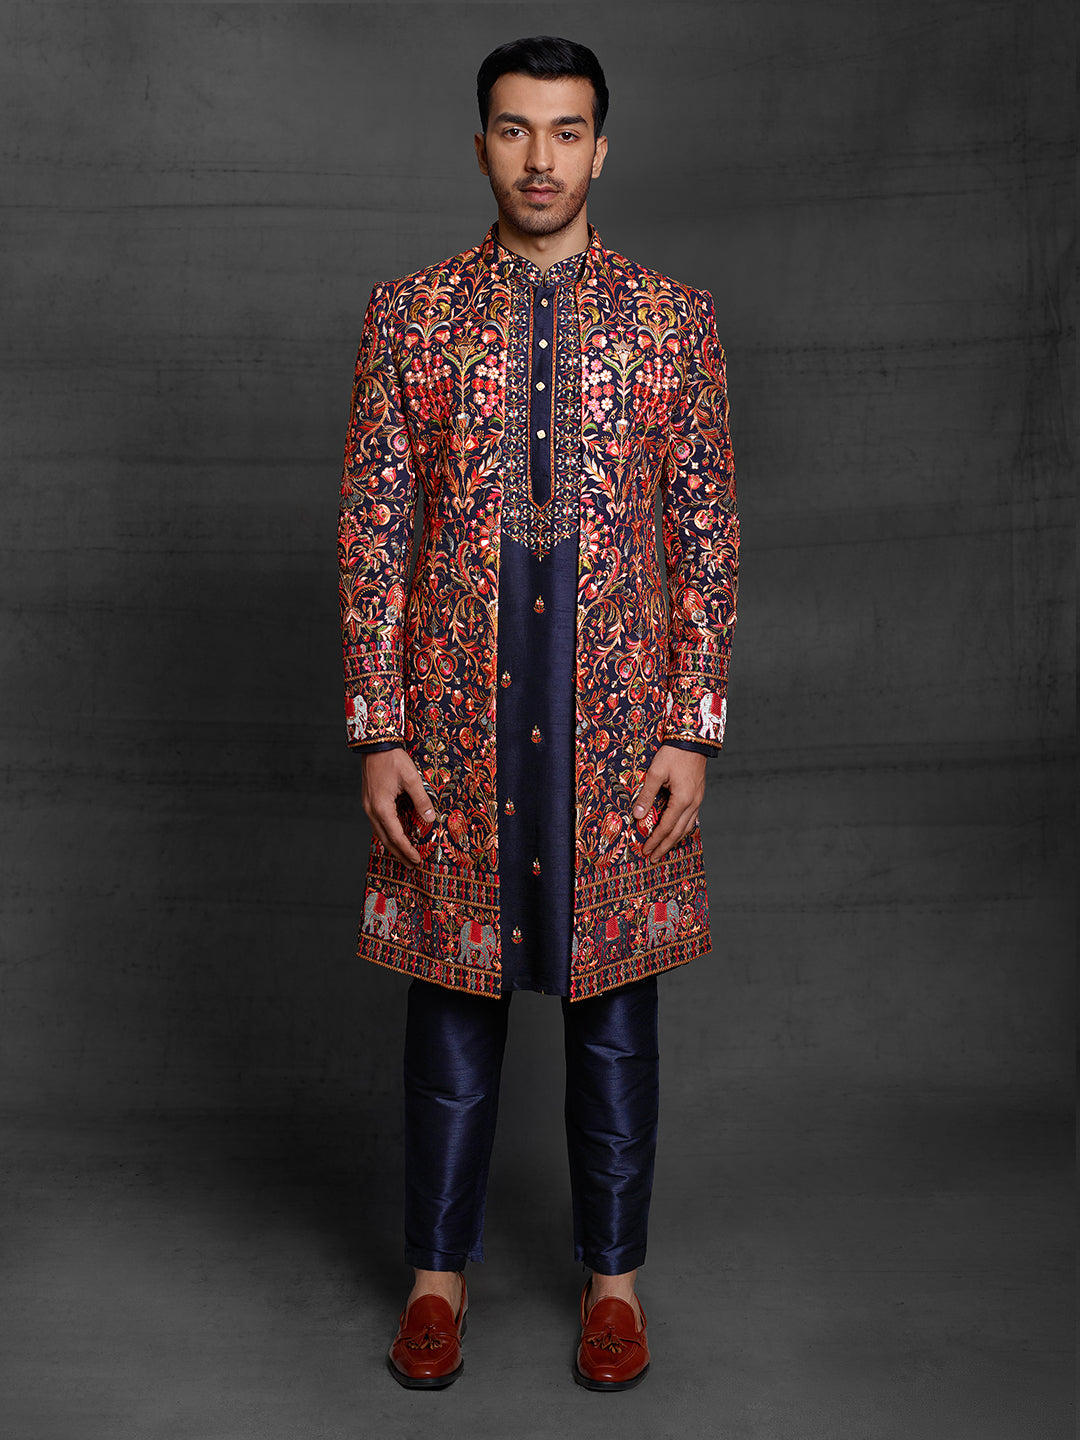 Multicolor jacket and kurta set.